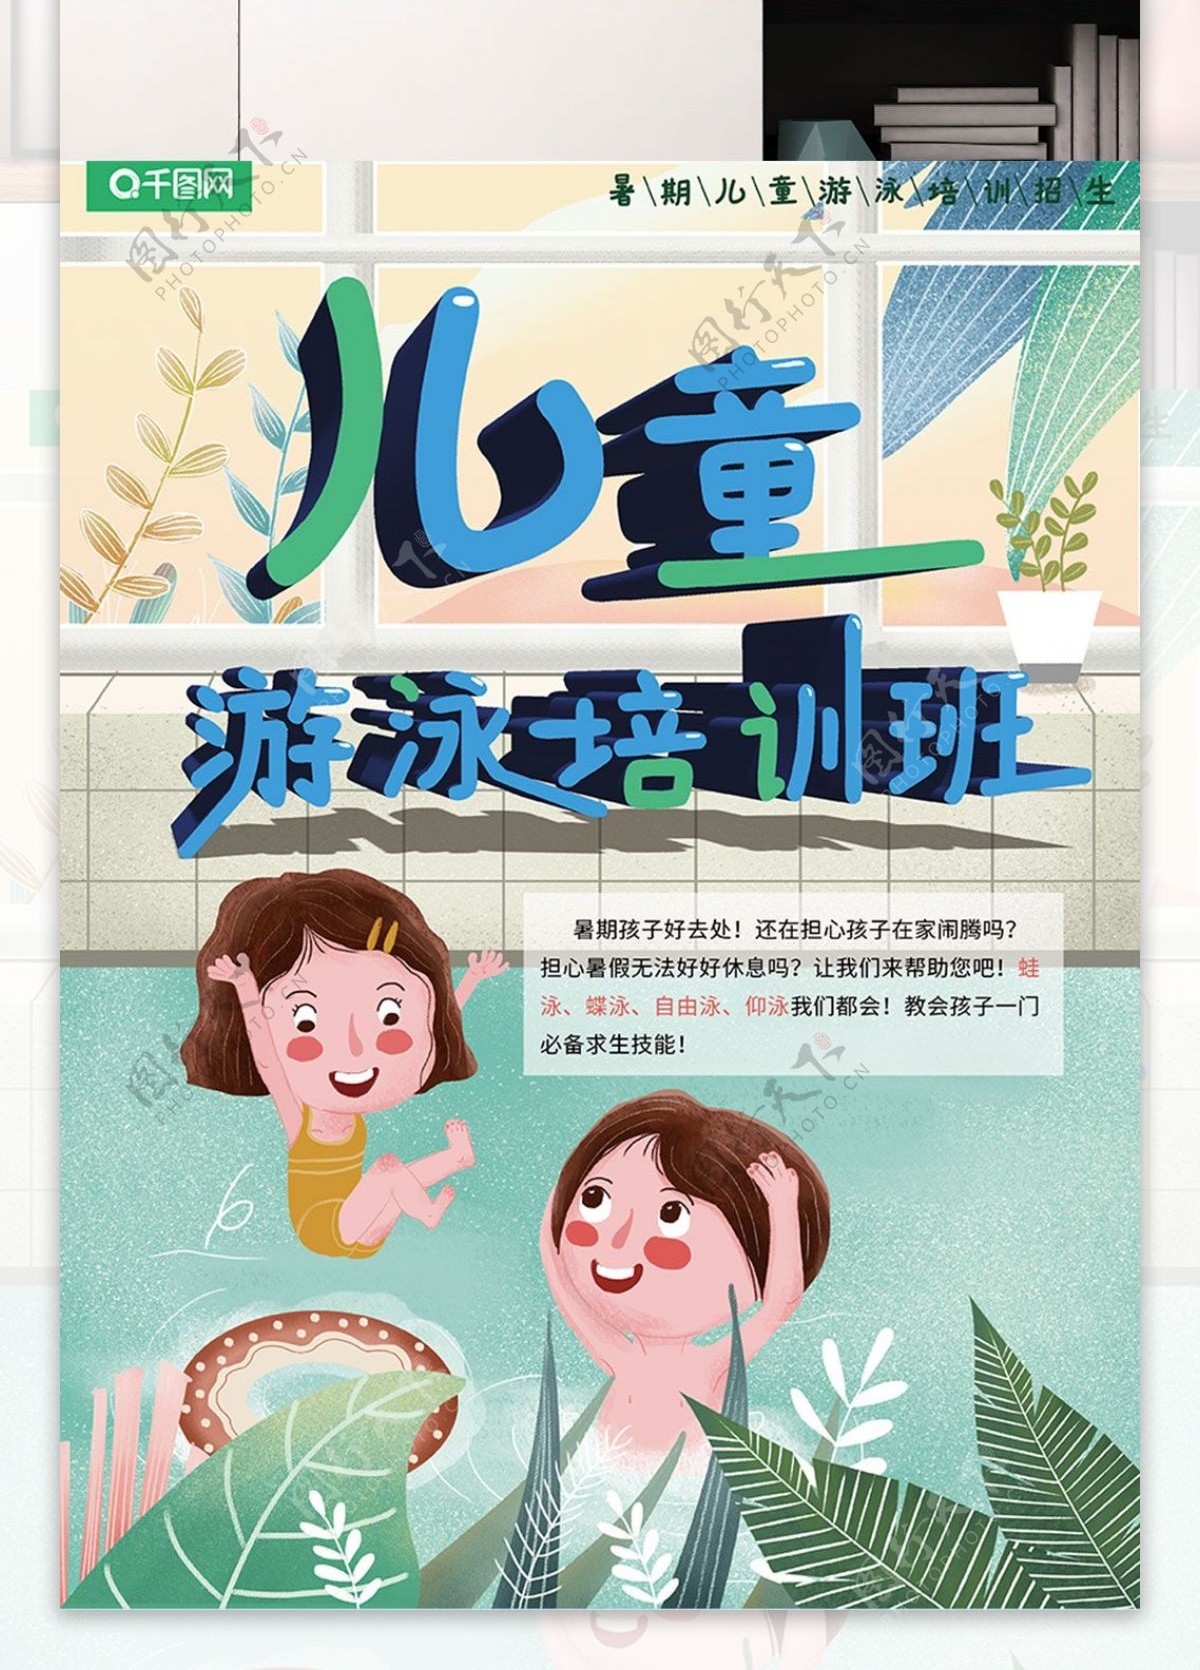 游泳馆海报暑期儿童游泳培训班招生卡通插画